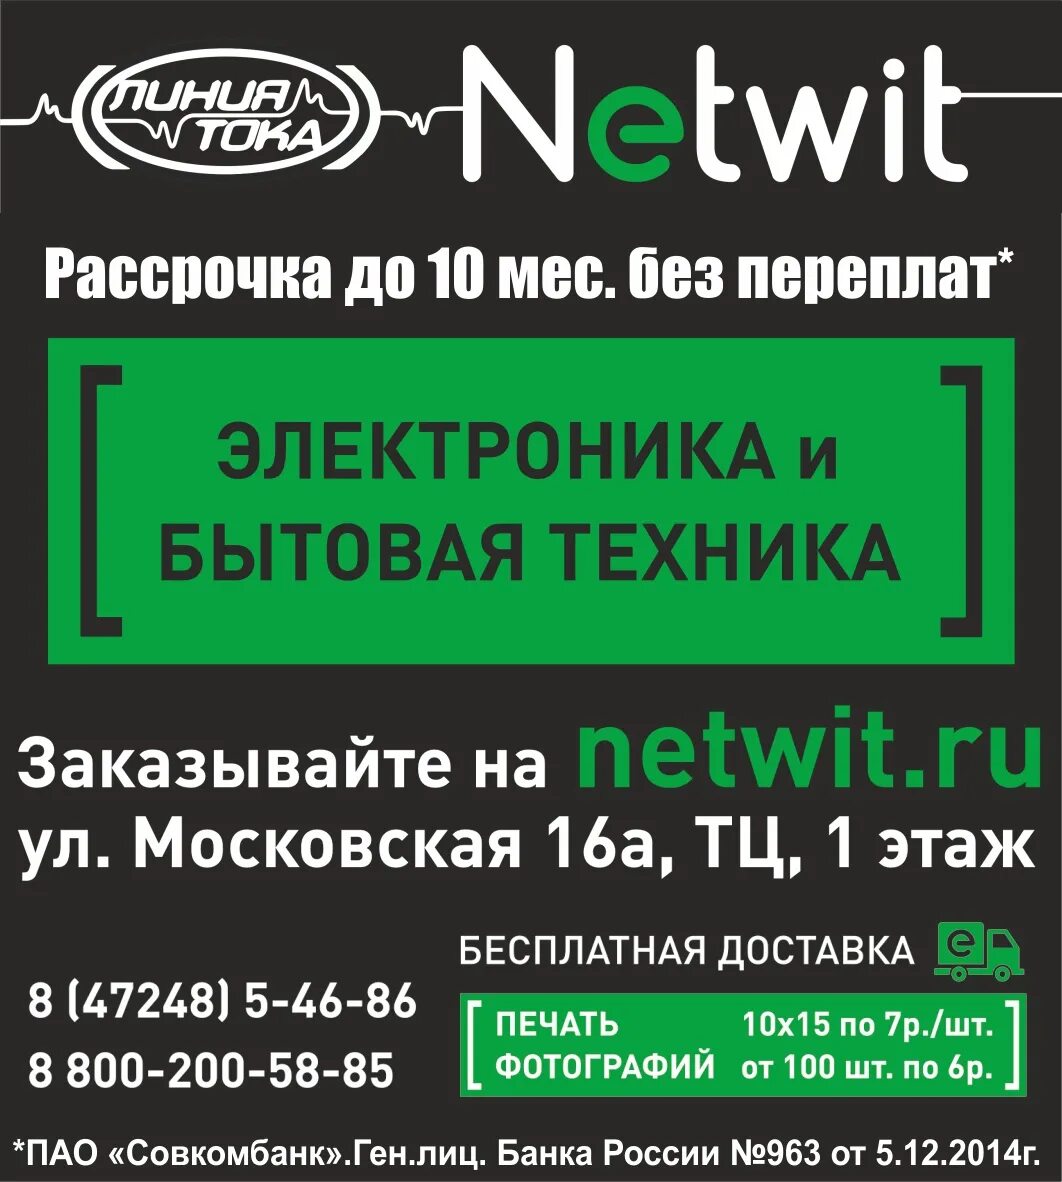 Линия тока Шебекино. Линия тока Шебекино каталог. NETWIT logo. Net wit